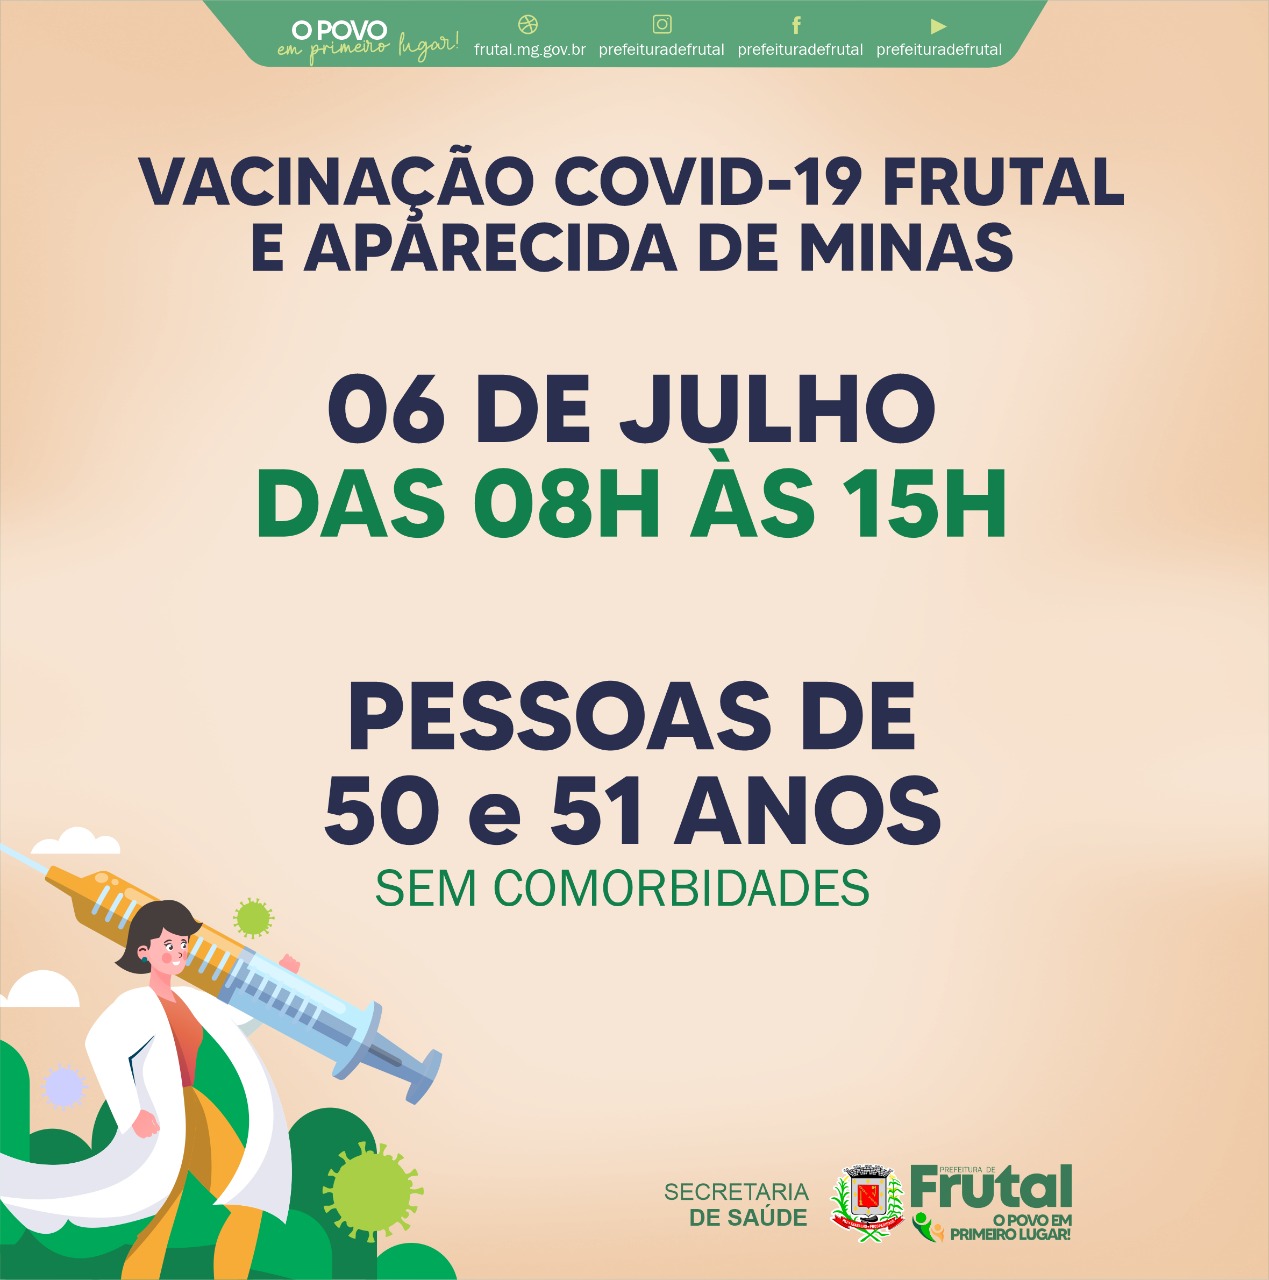 FRUTAL E APARECIDA DE MINAS TERÃO VACINAÇÃO NESTA TERÇA-FEIRA, DIA 06